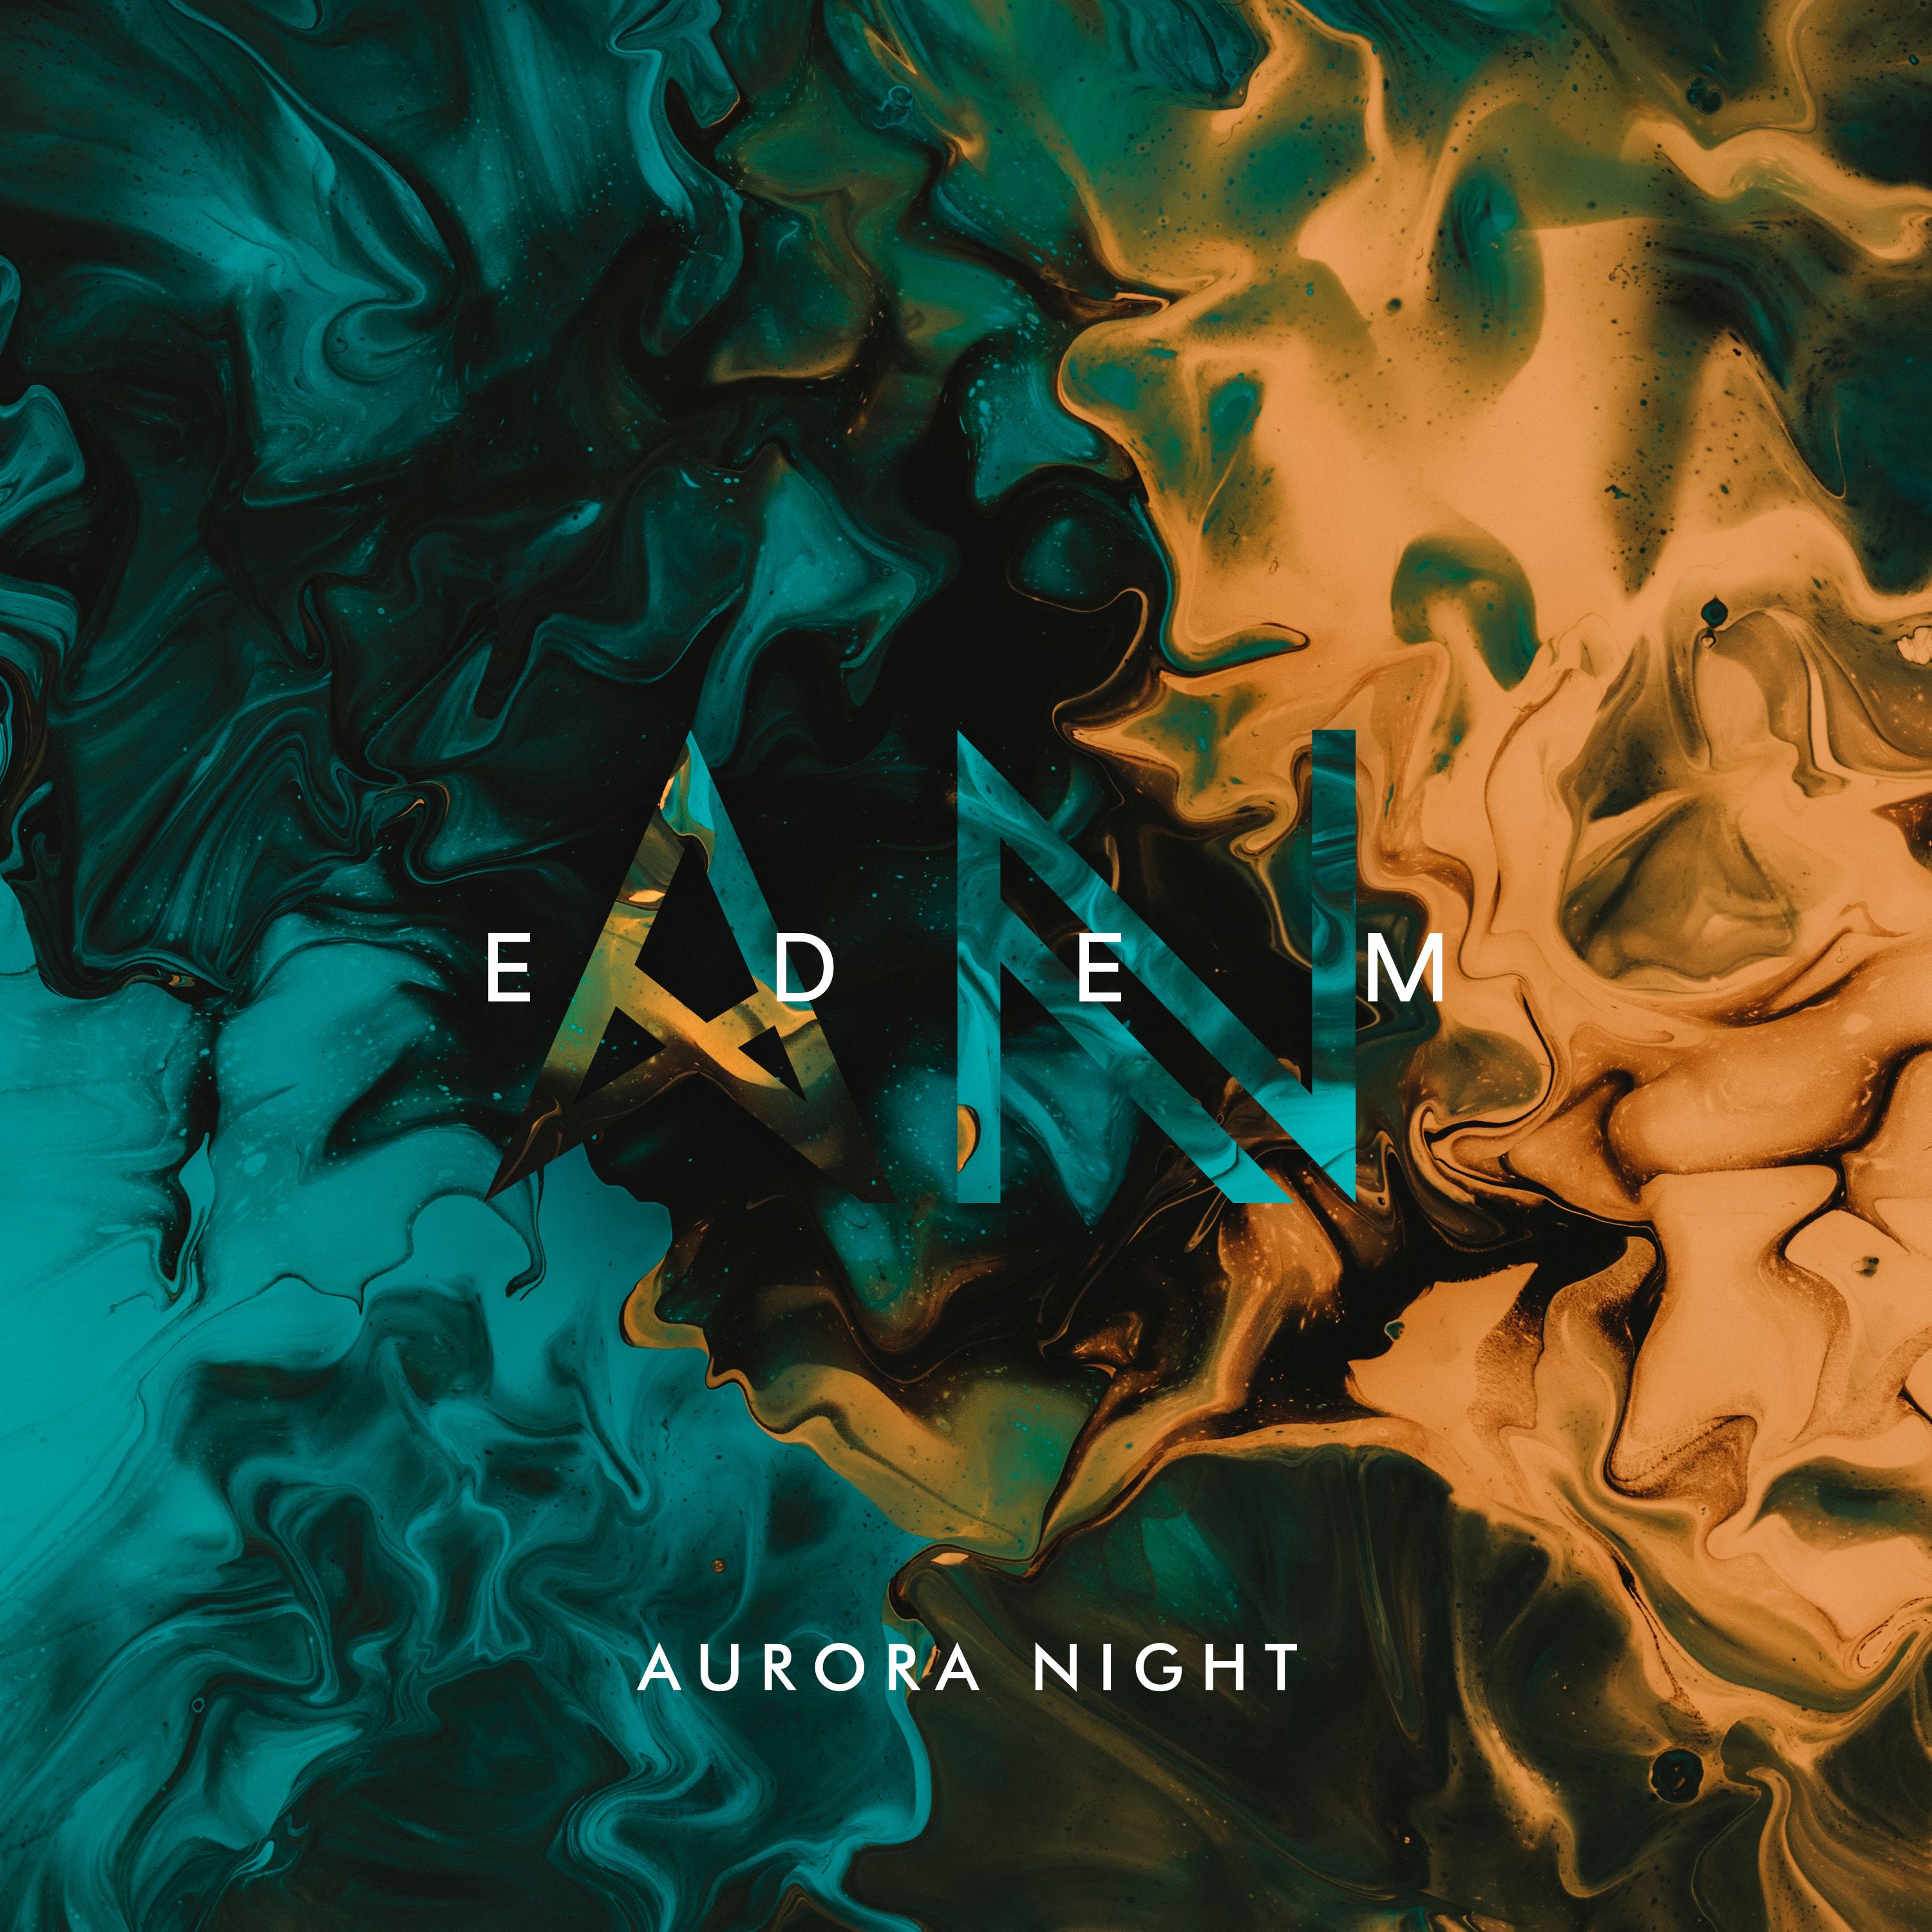 Descarca Aurora Night - Edem